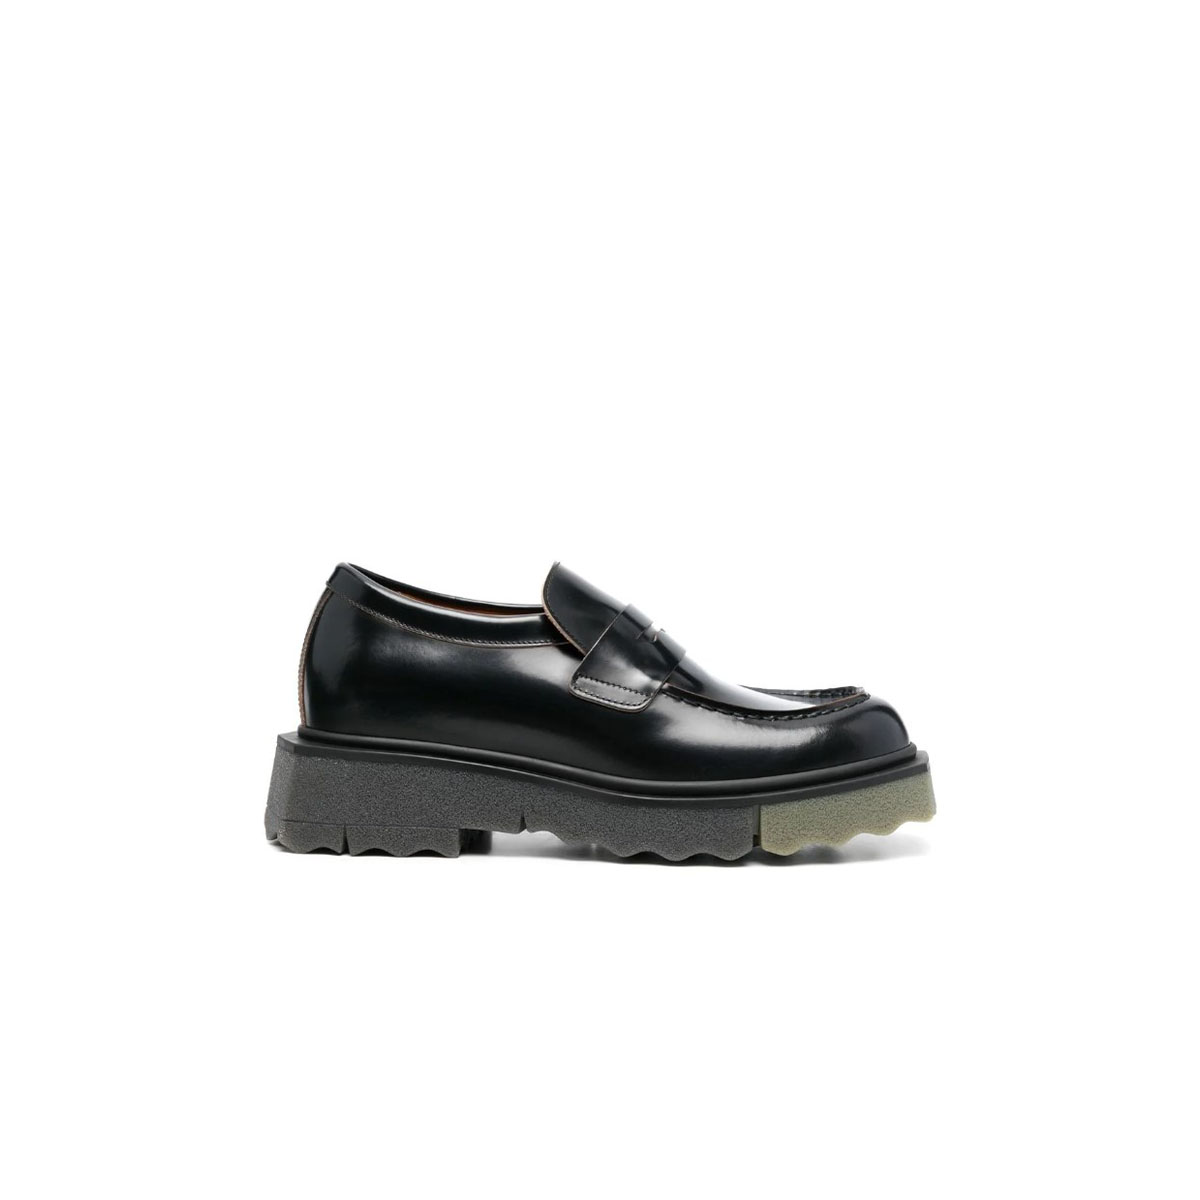 Παπούτσια Ανδρικό Μαύρο Leather Sponge Loafers OFF-WHITE